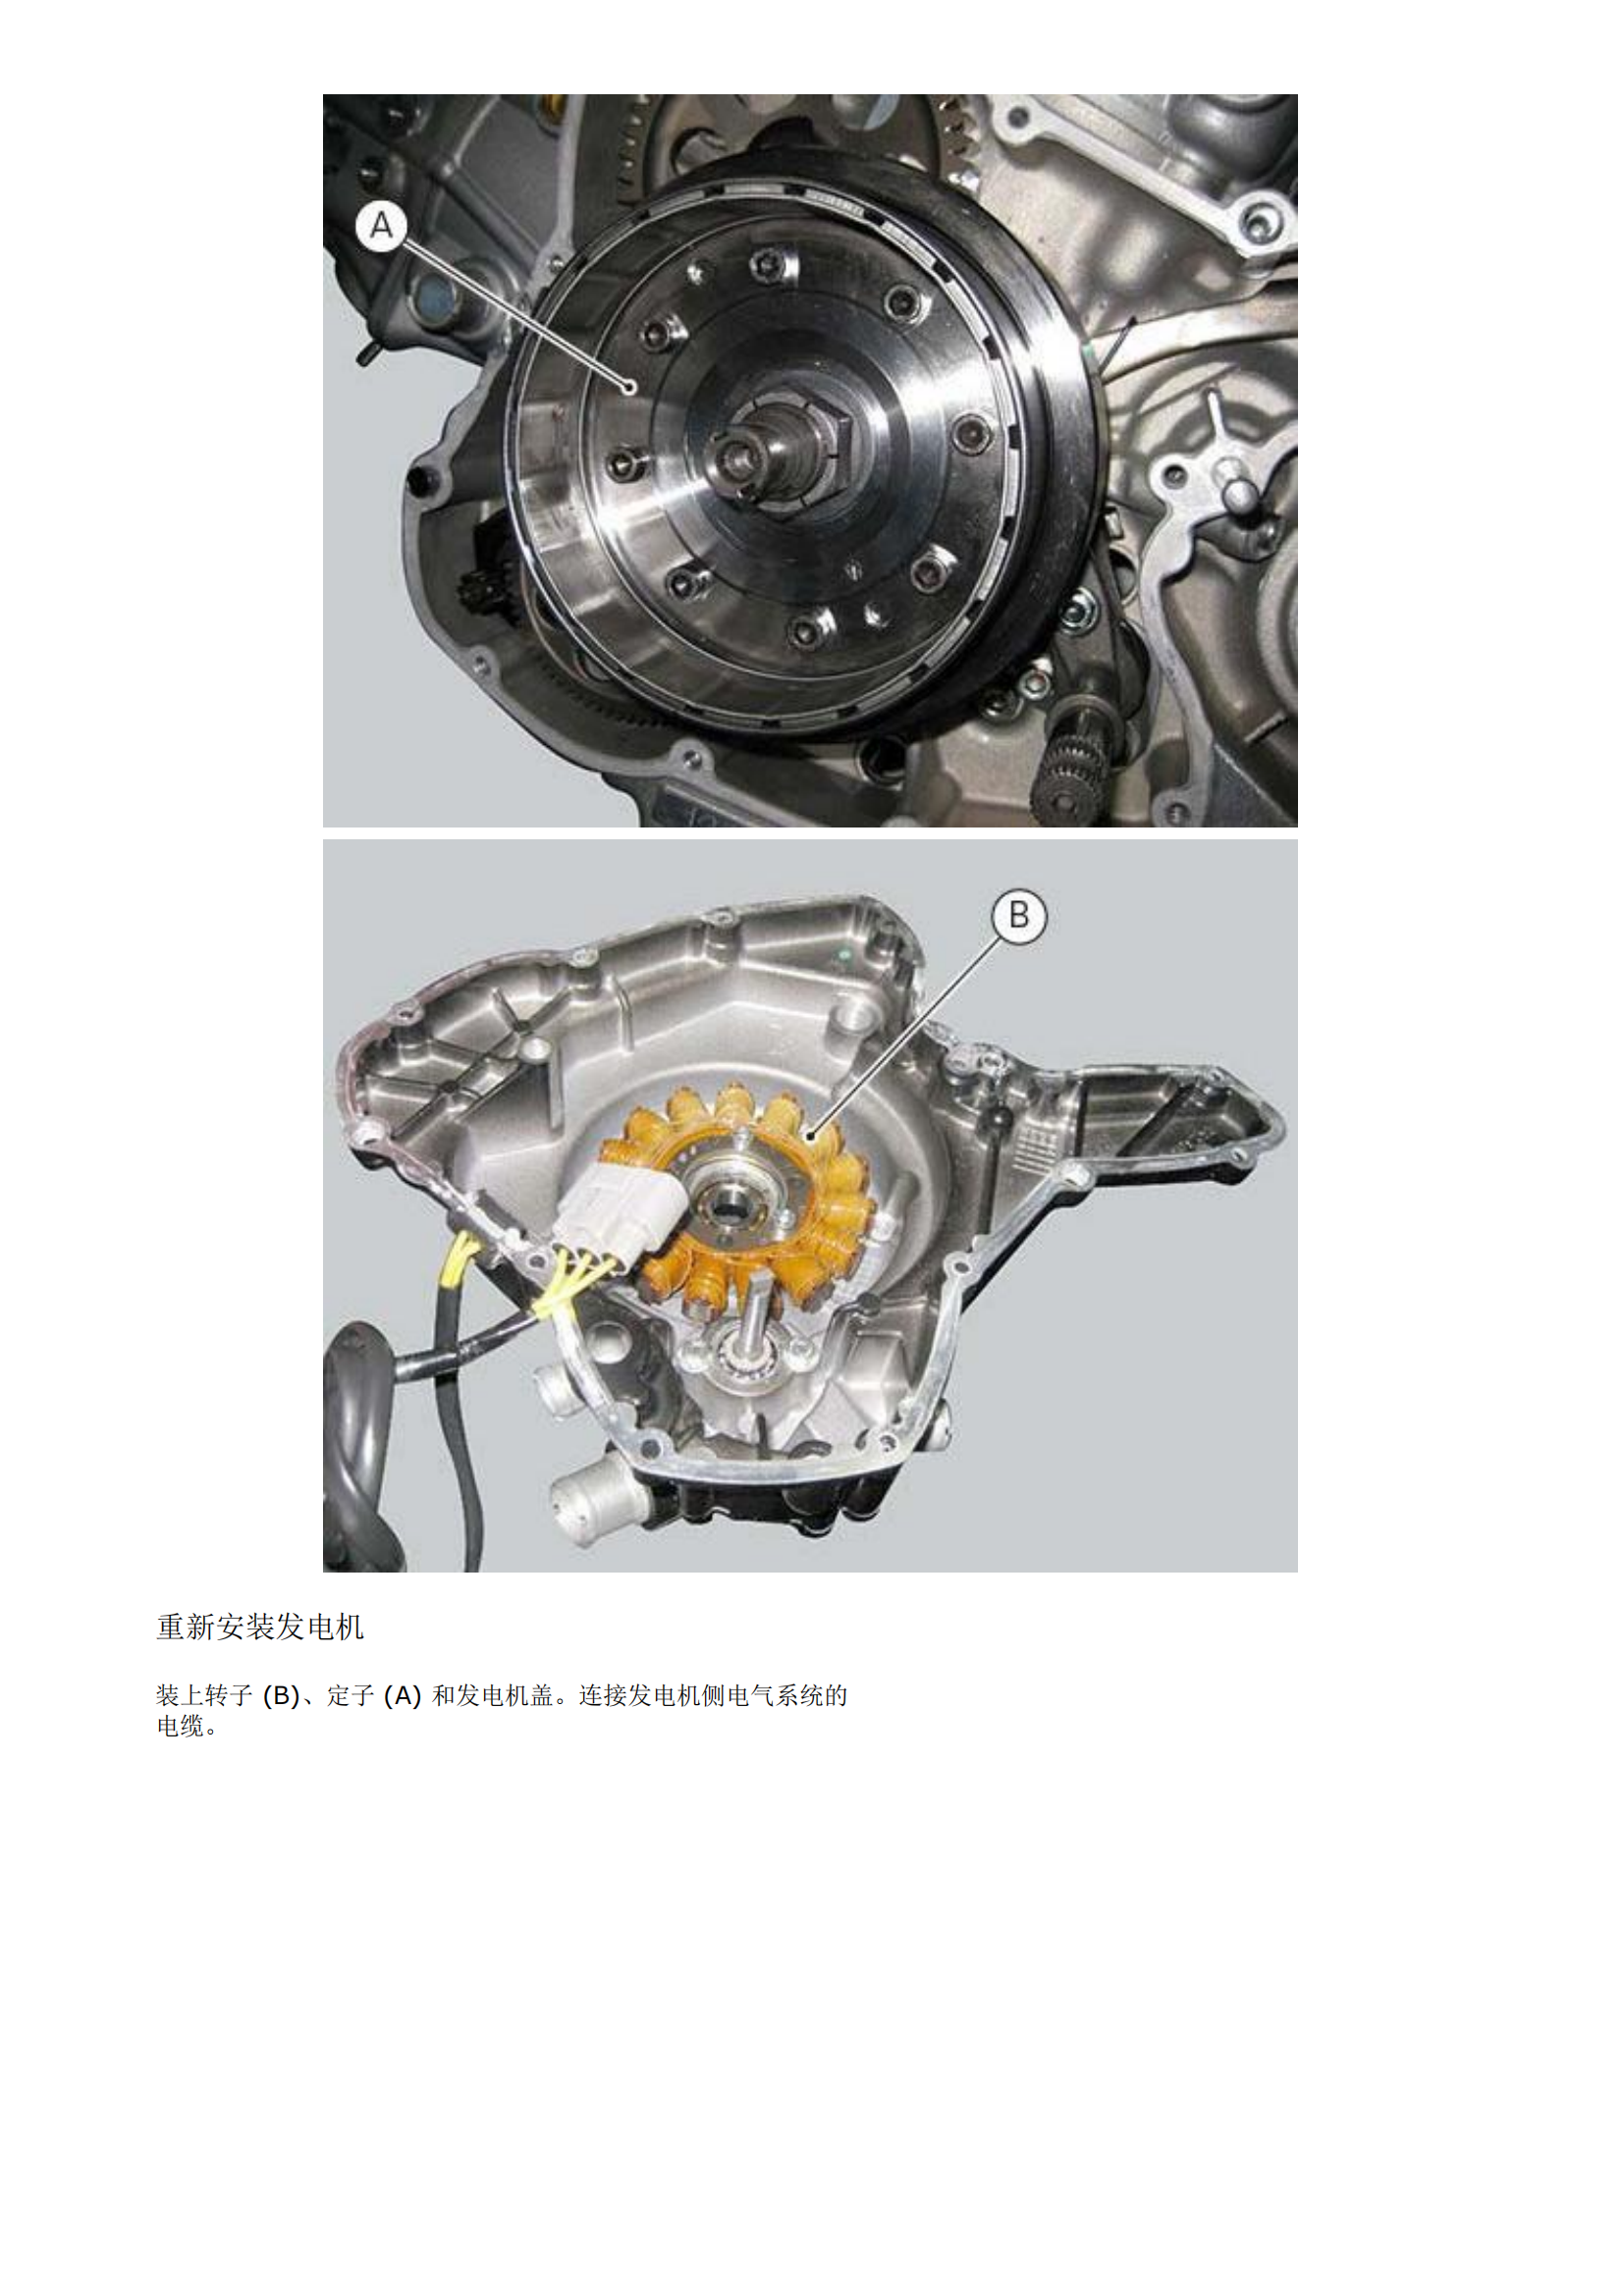 简体中文2014年杜卡迪骇道821 Ducati Hyperstrada维修手册插图3